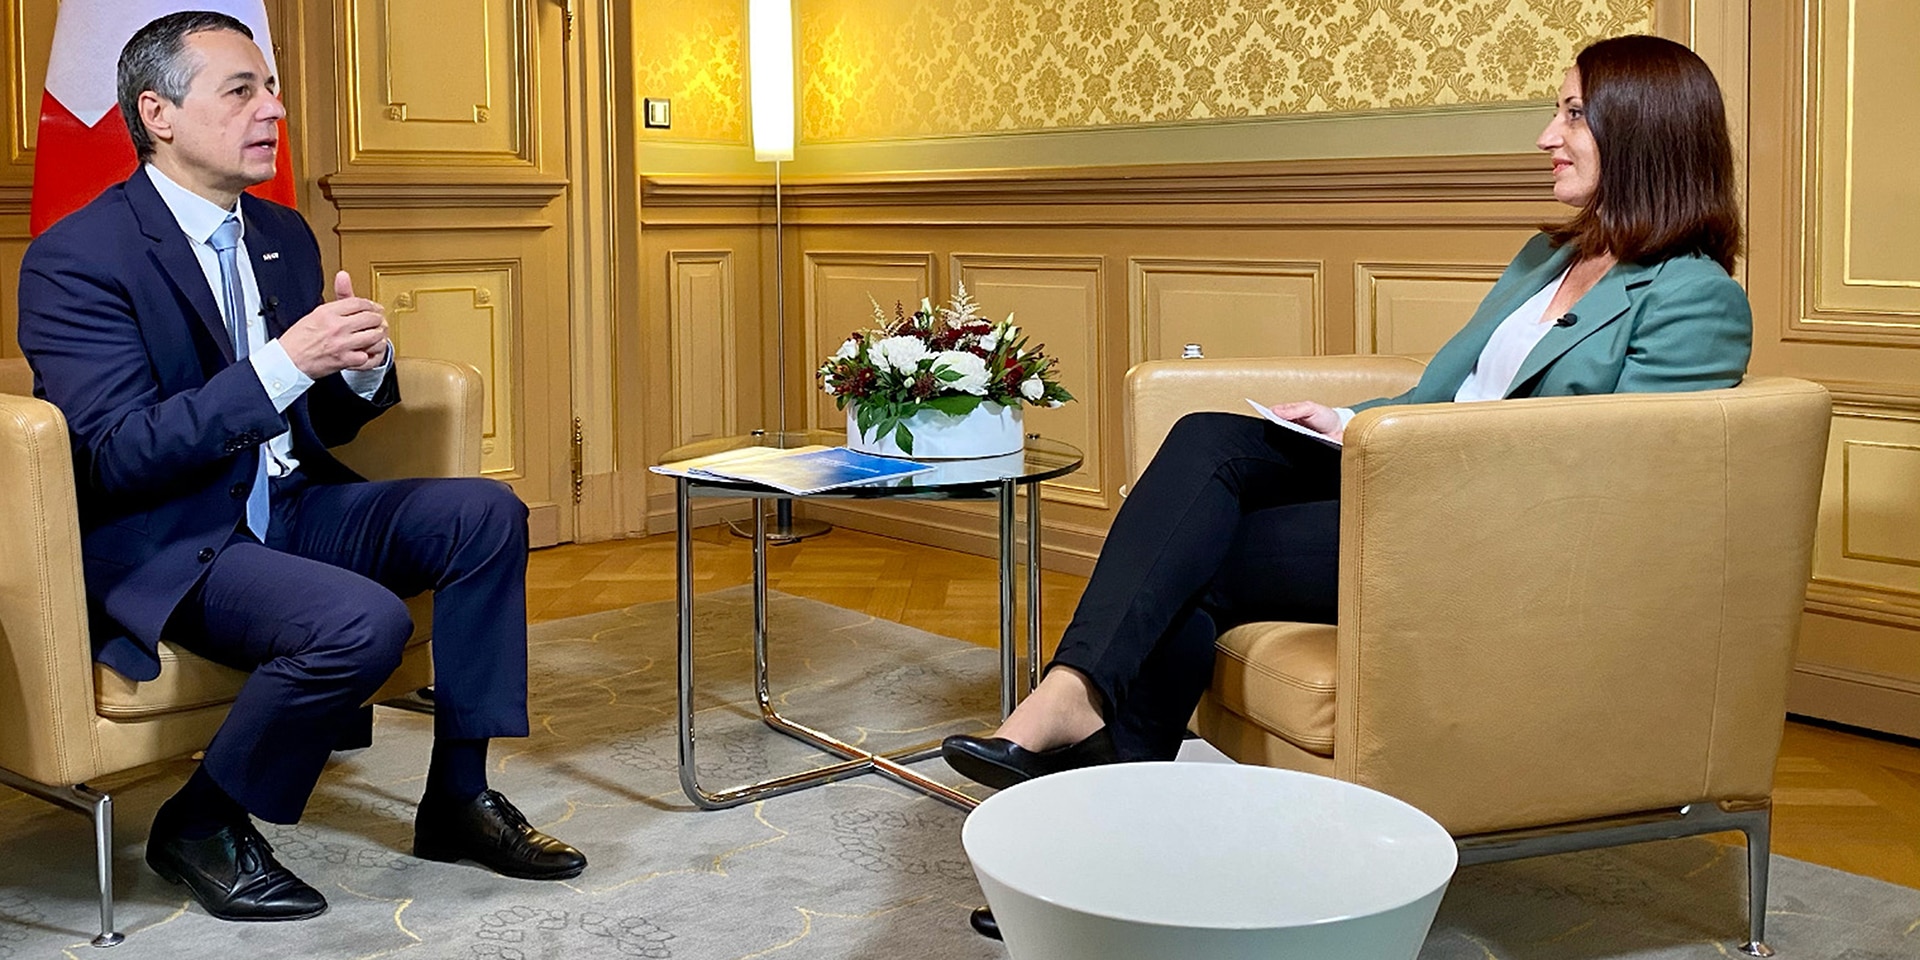  Le conseiller fédéral Ignazio Cassis est assis sur une chaise et s'entretient avec le modérateur lors d'une interview.